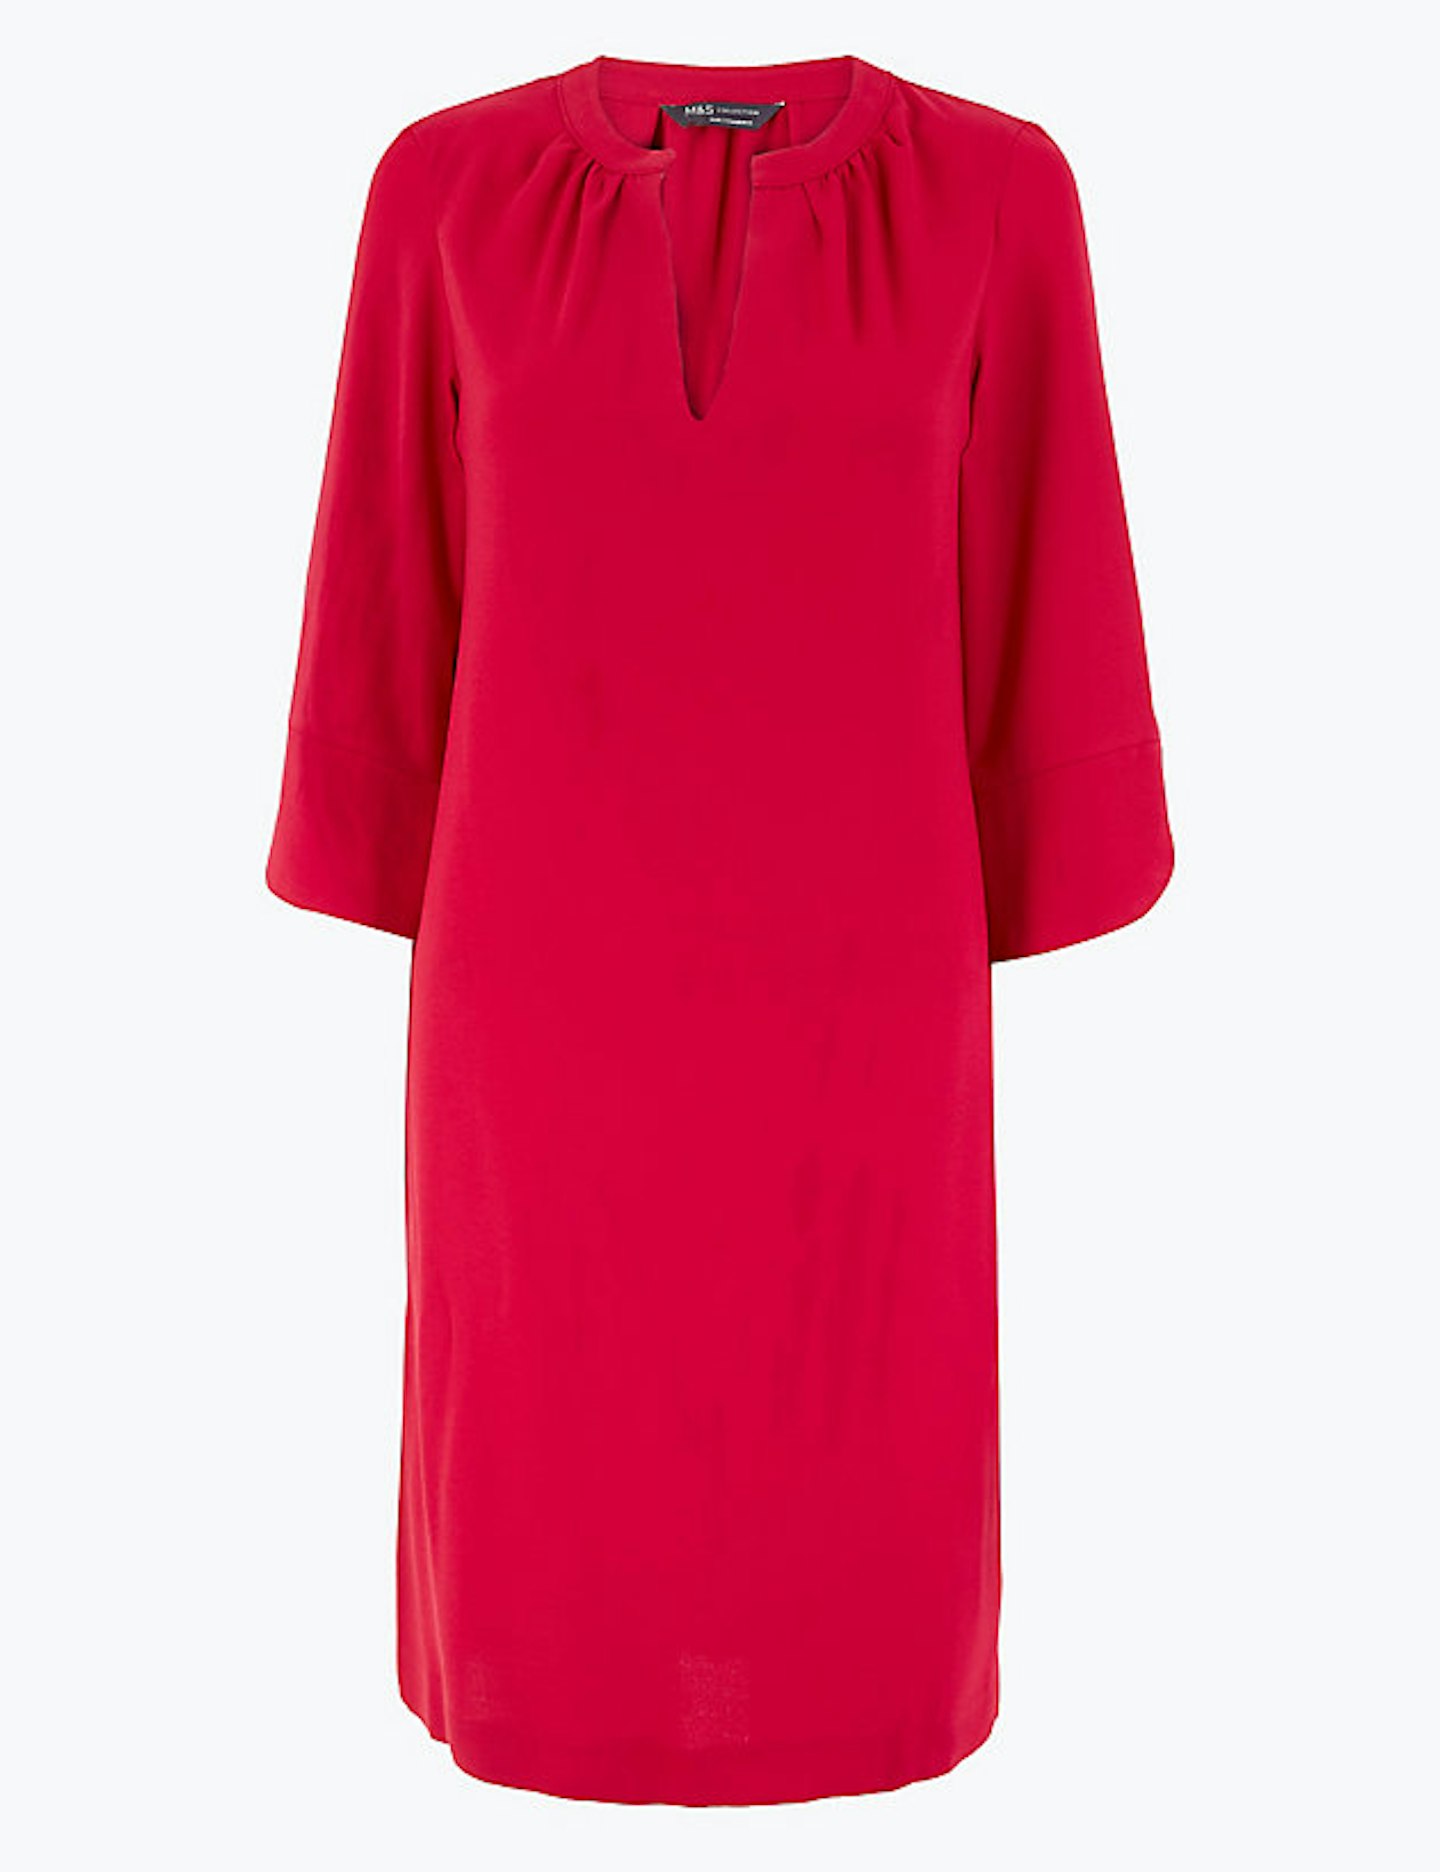 M&S, Crepe Shift Dress, £19.50